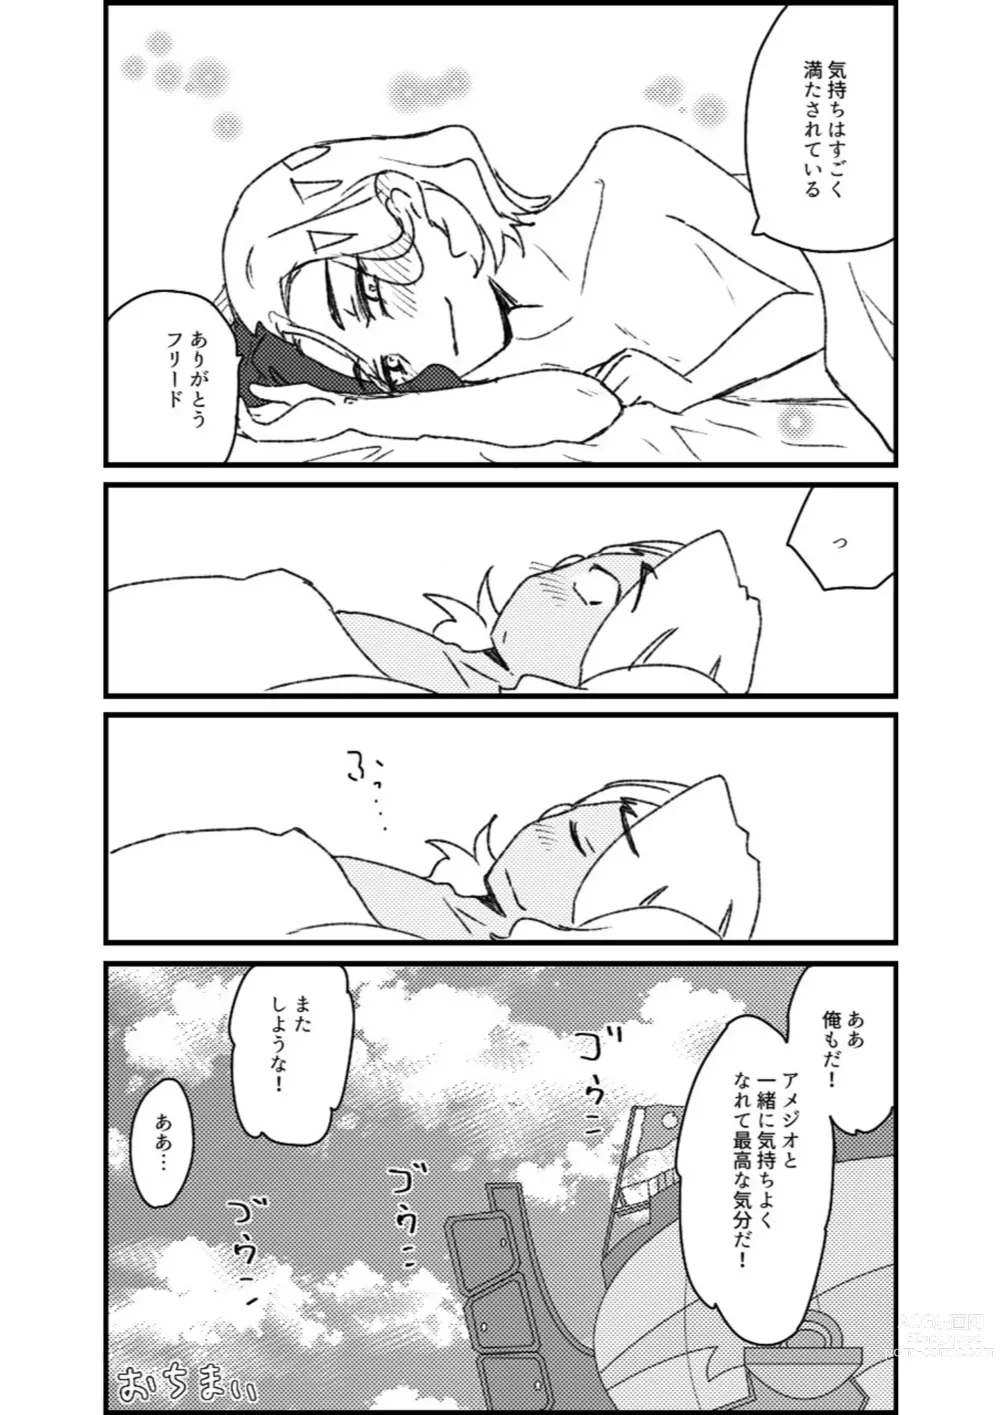 Page 125 of doujinshi Furiame Hanashi